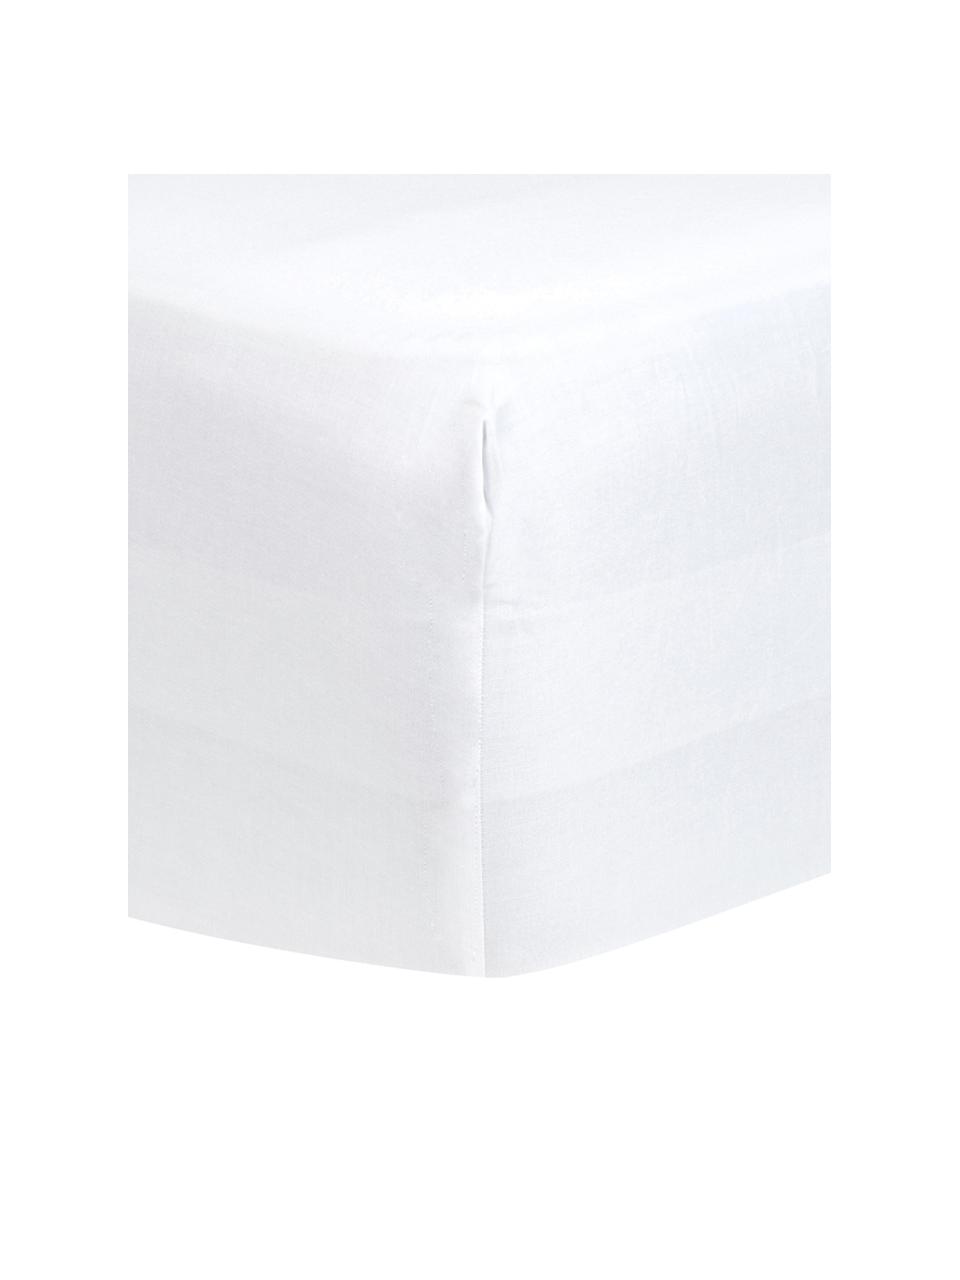 Boxspring-Spannbettlaken Comfort in Weiß, Baumwollsatin, Webart: Satin, Weiß, B 160 x L 200 cm